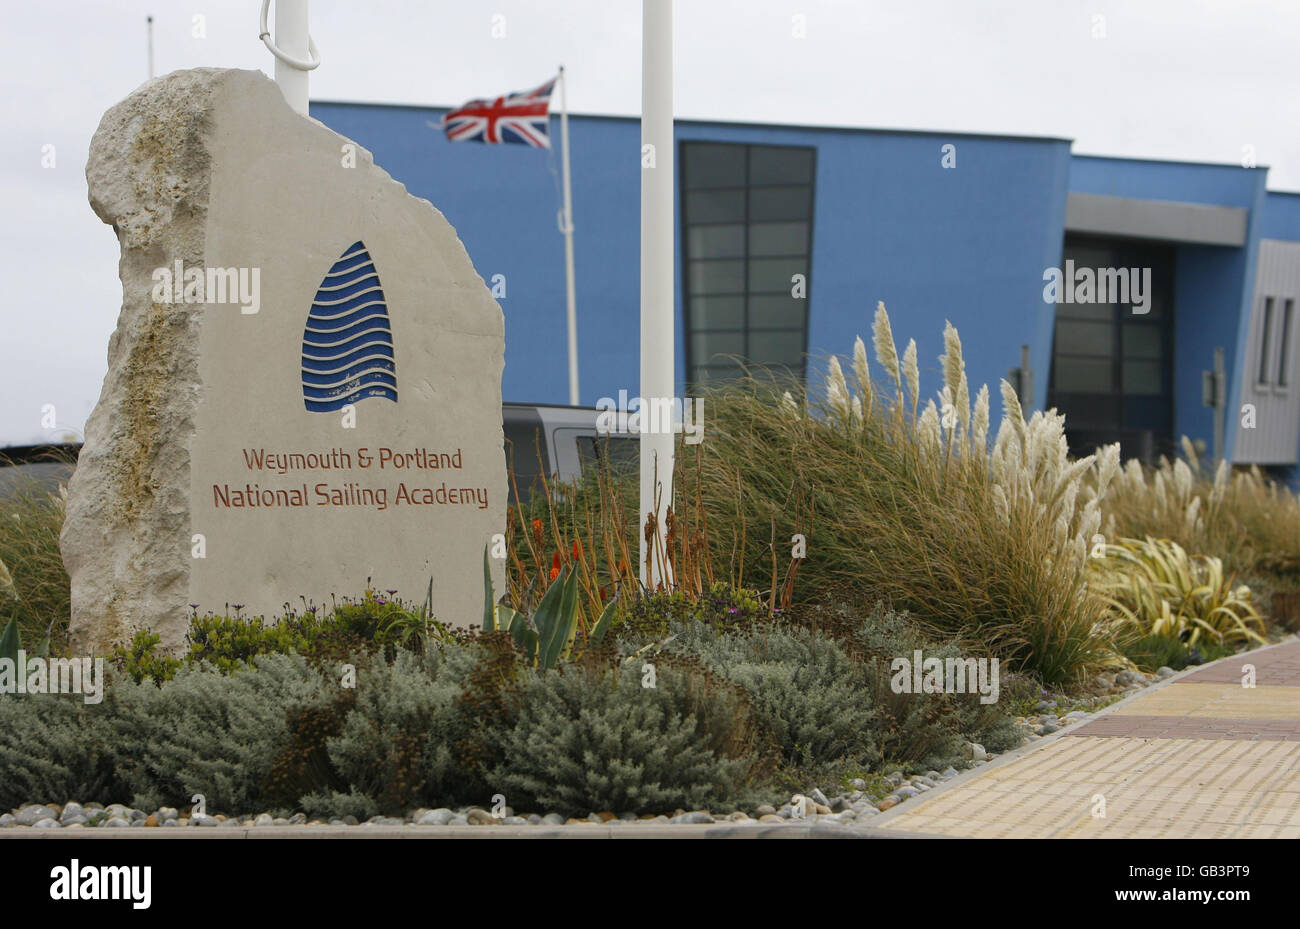 Allgemeine Ansicht der Weymouth und Portland National Sailing Academy, die der Veranstaltungsort für alle Segelveranstaltungen während der Olympischen Spiele 2012 in London sein wird. Stockfoto